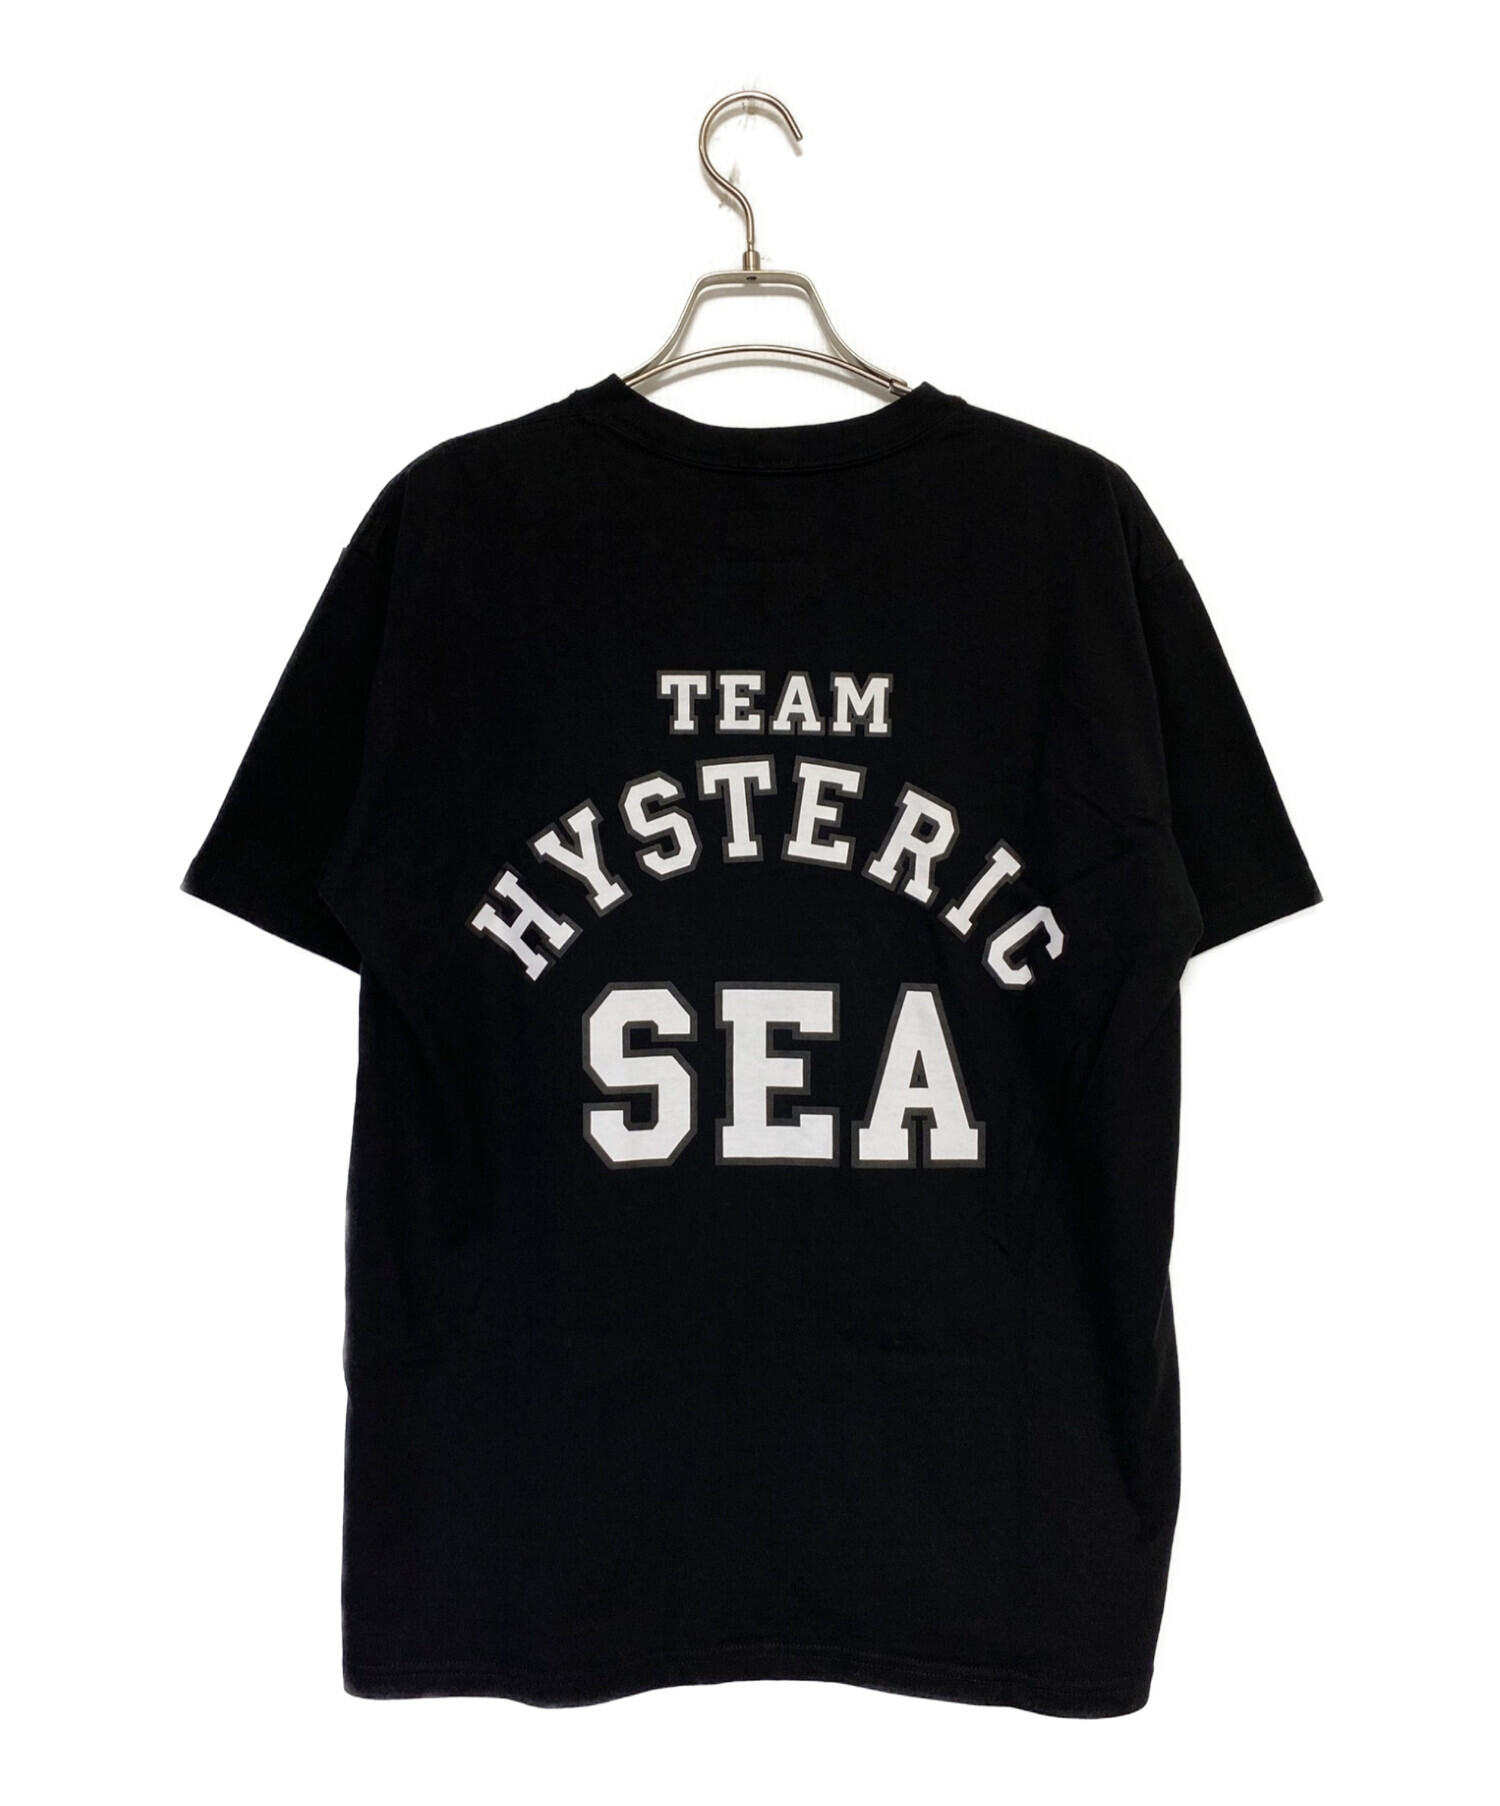 Lサイズ WIND AND SEA ヒステリックグラマー Tシャツ